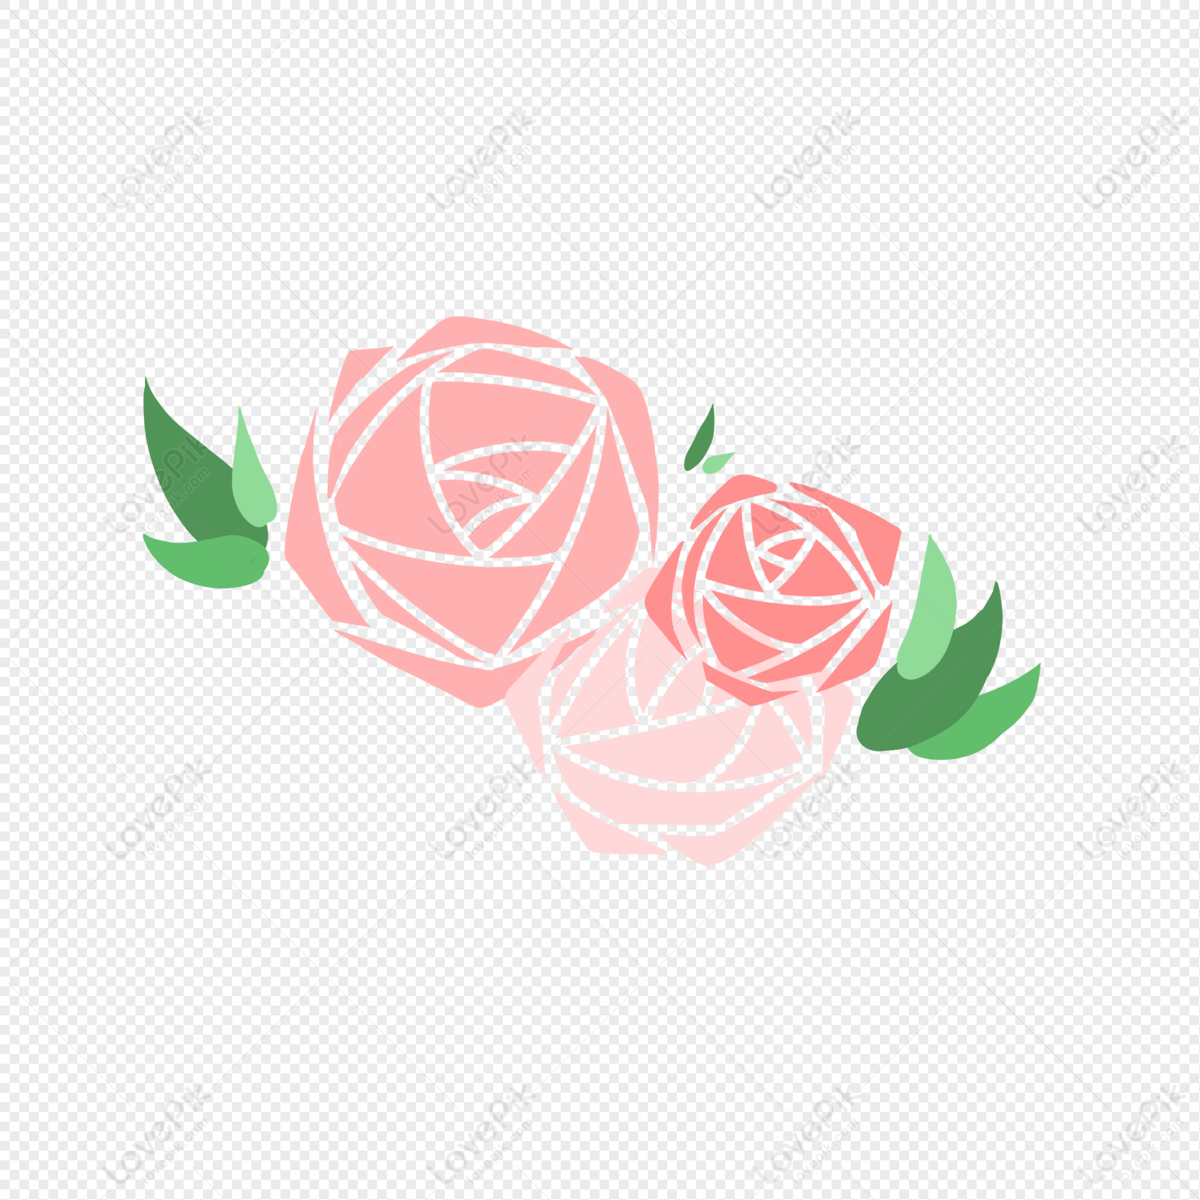 玫瑰圖片素材, 玫瑰圖案免費下載- Lovepik